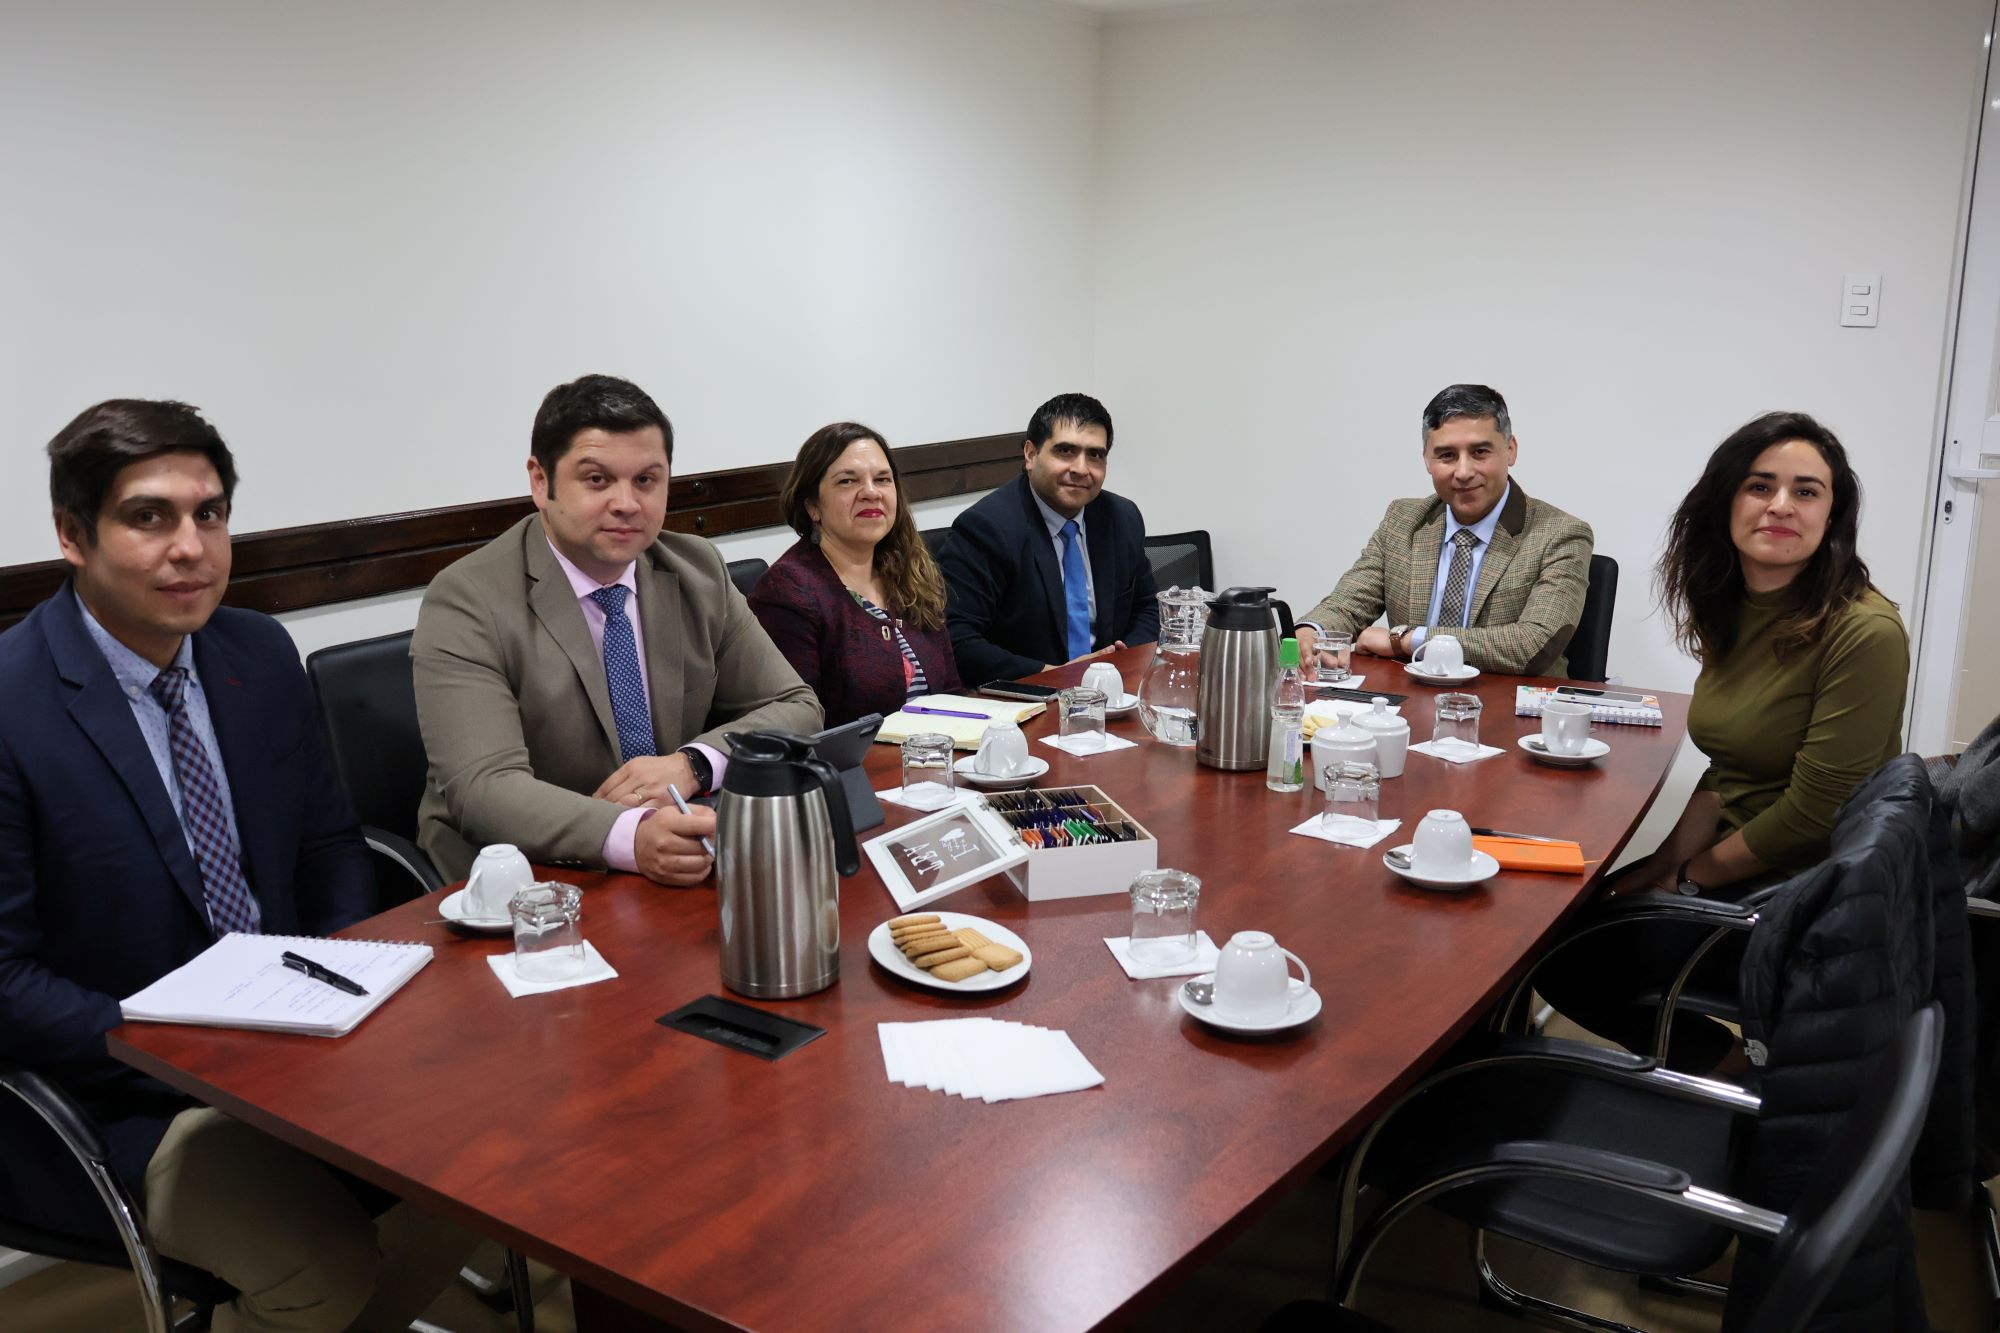 Diputada por Magallanes Javiera Morales: “La administración municipal en Punta Arenas no da para más”